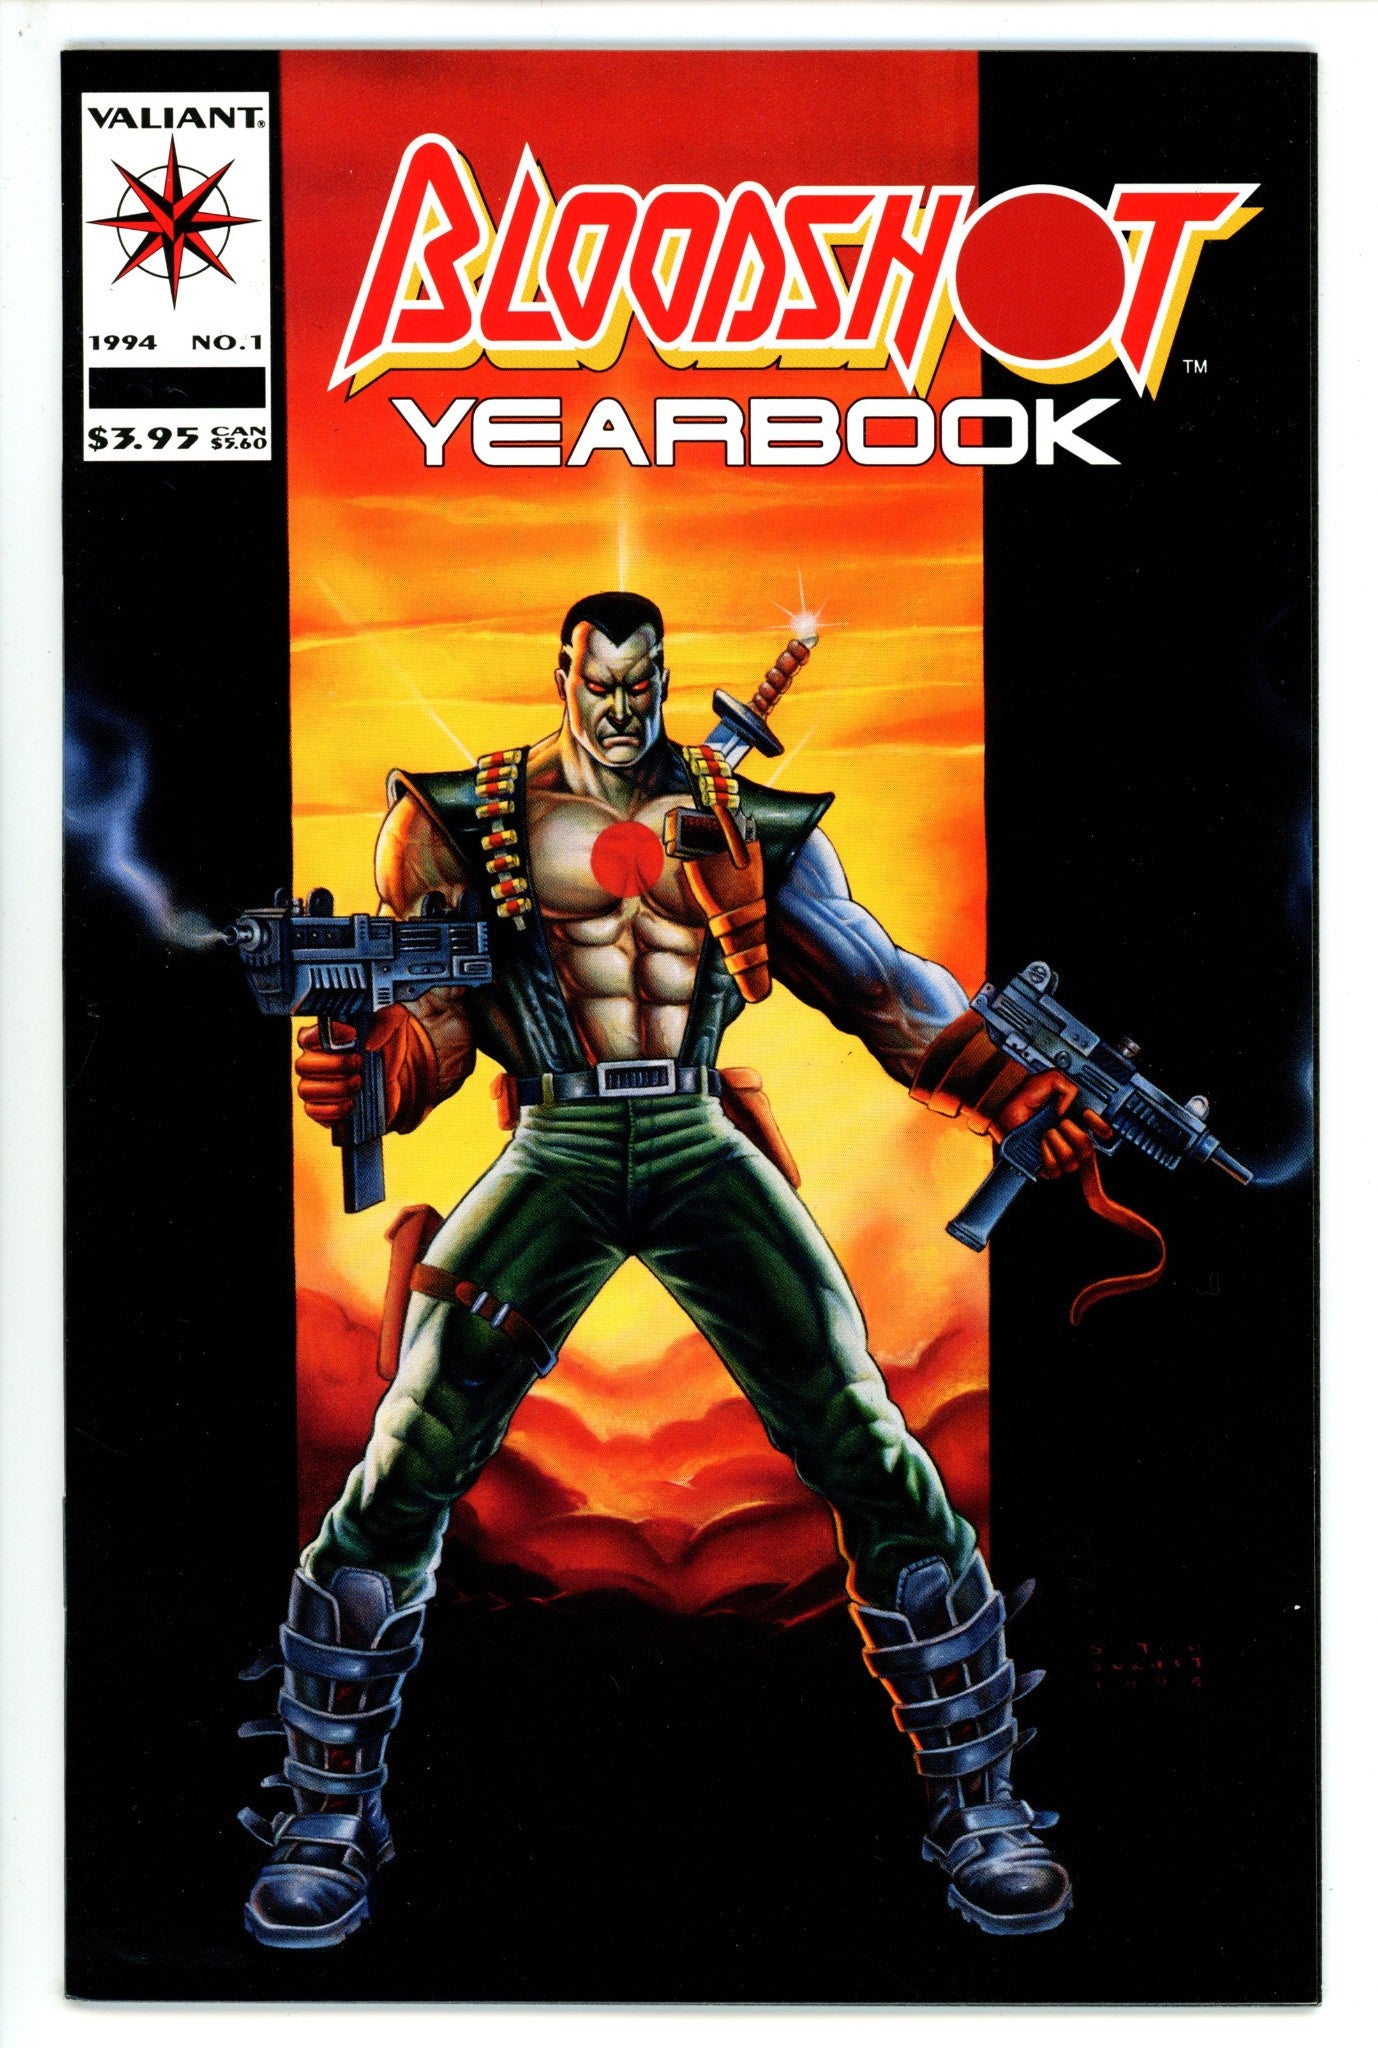 Bloodshot Yearbook Vol 1 1 (1994)